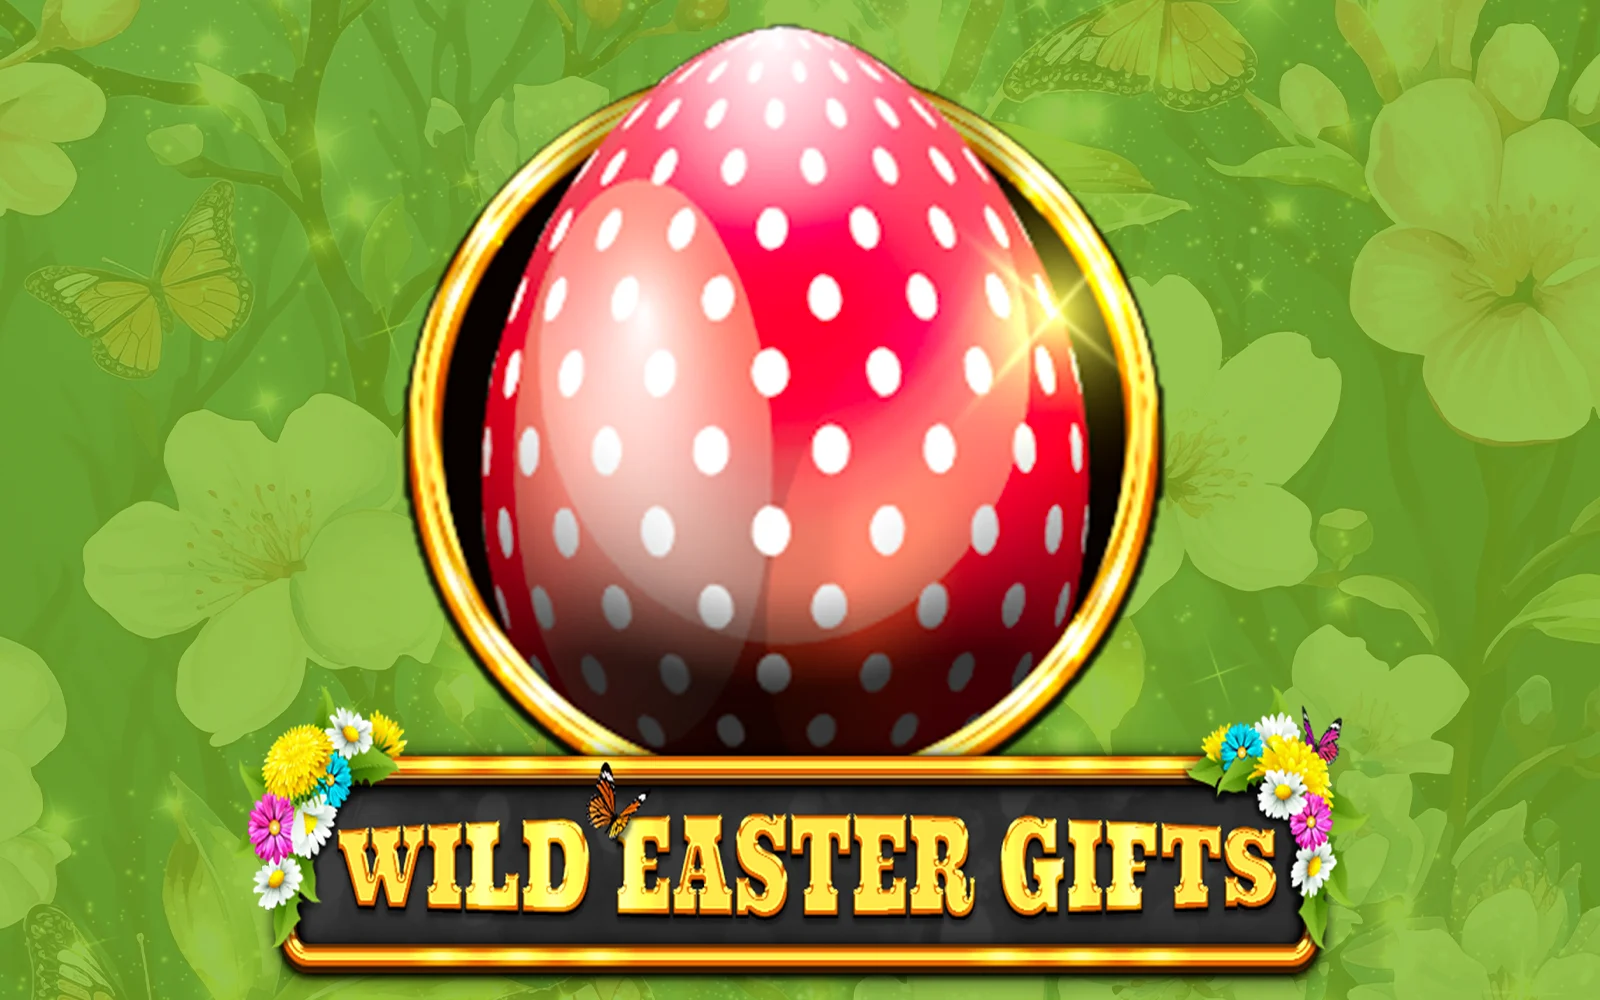 Speel Wild Easter Gifts op Starcasino.be online casino